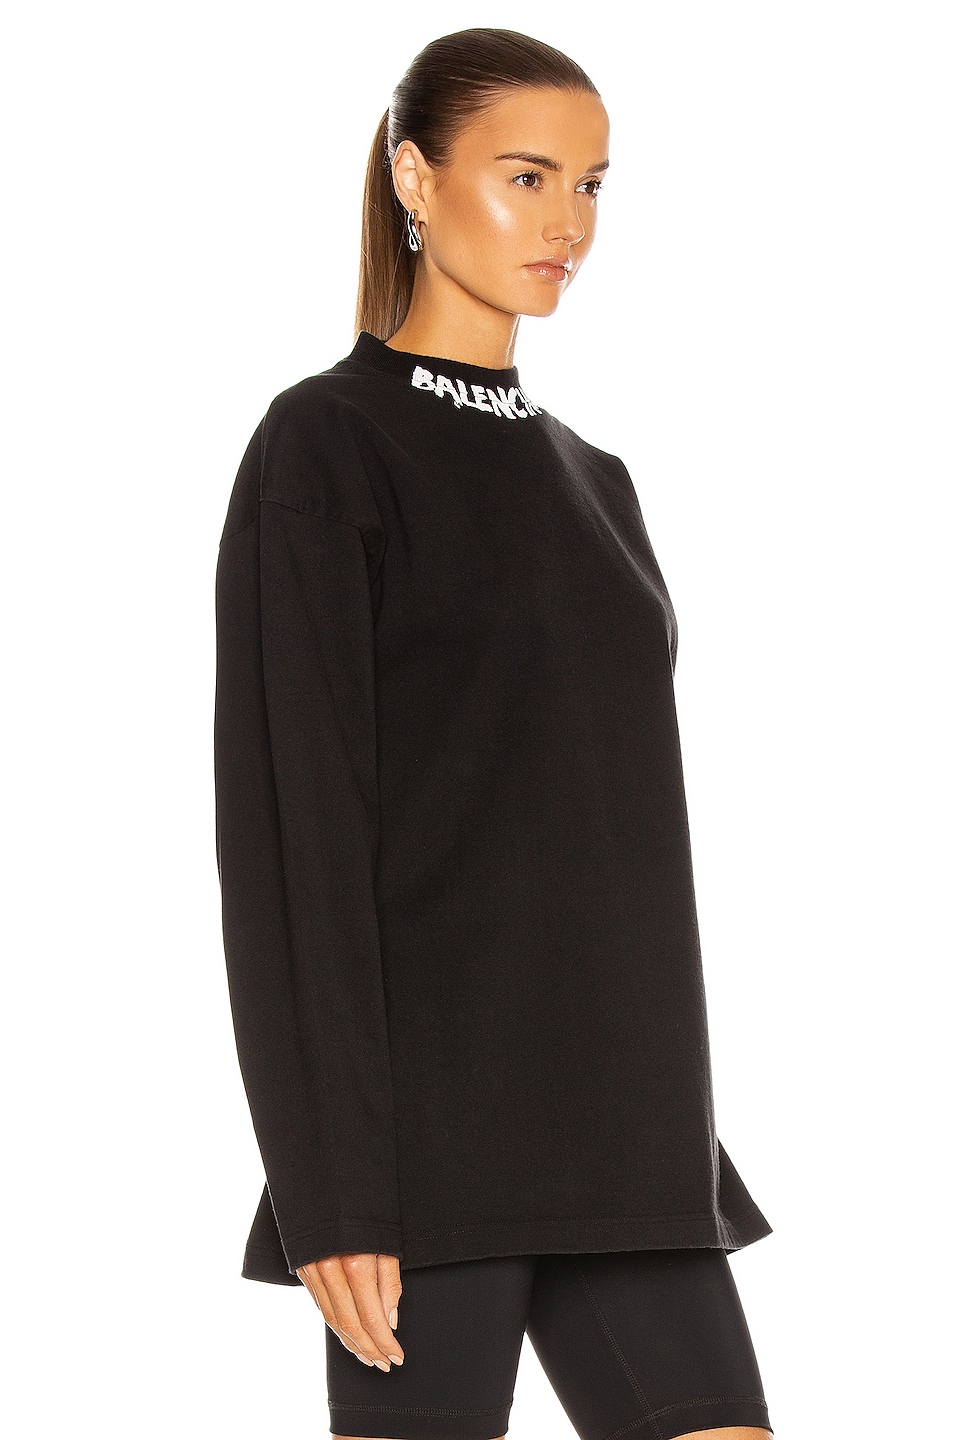 Balenciaga Long Sleeve Curved T Shirt in Black & White | FWRD